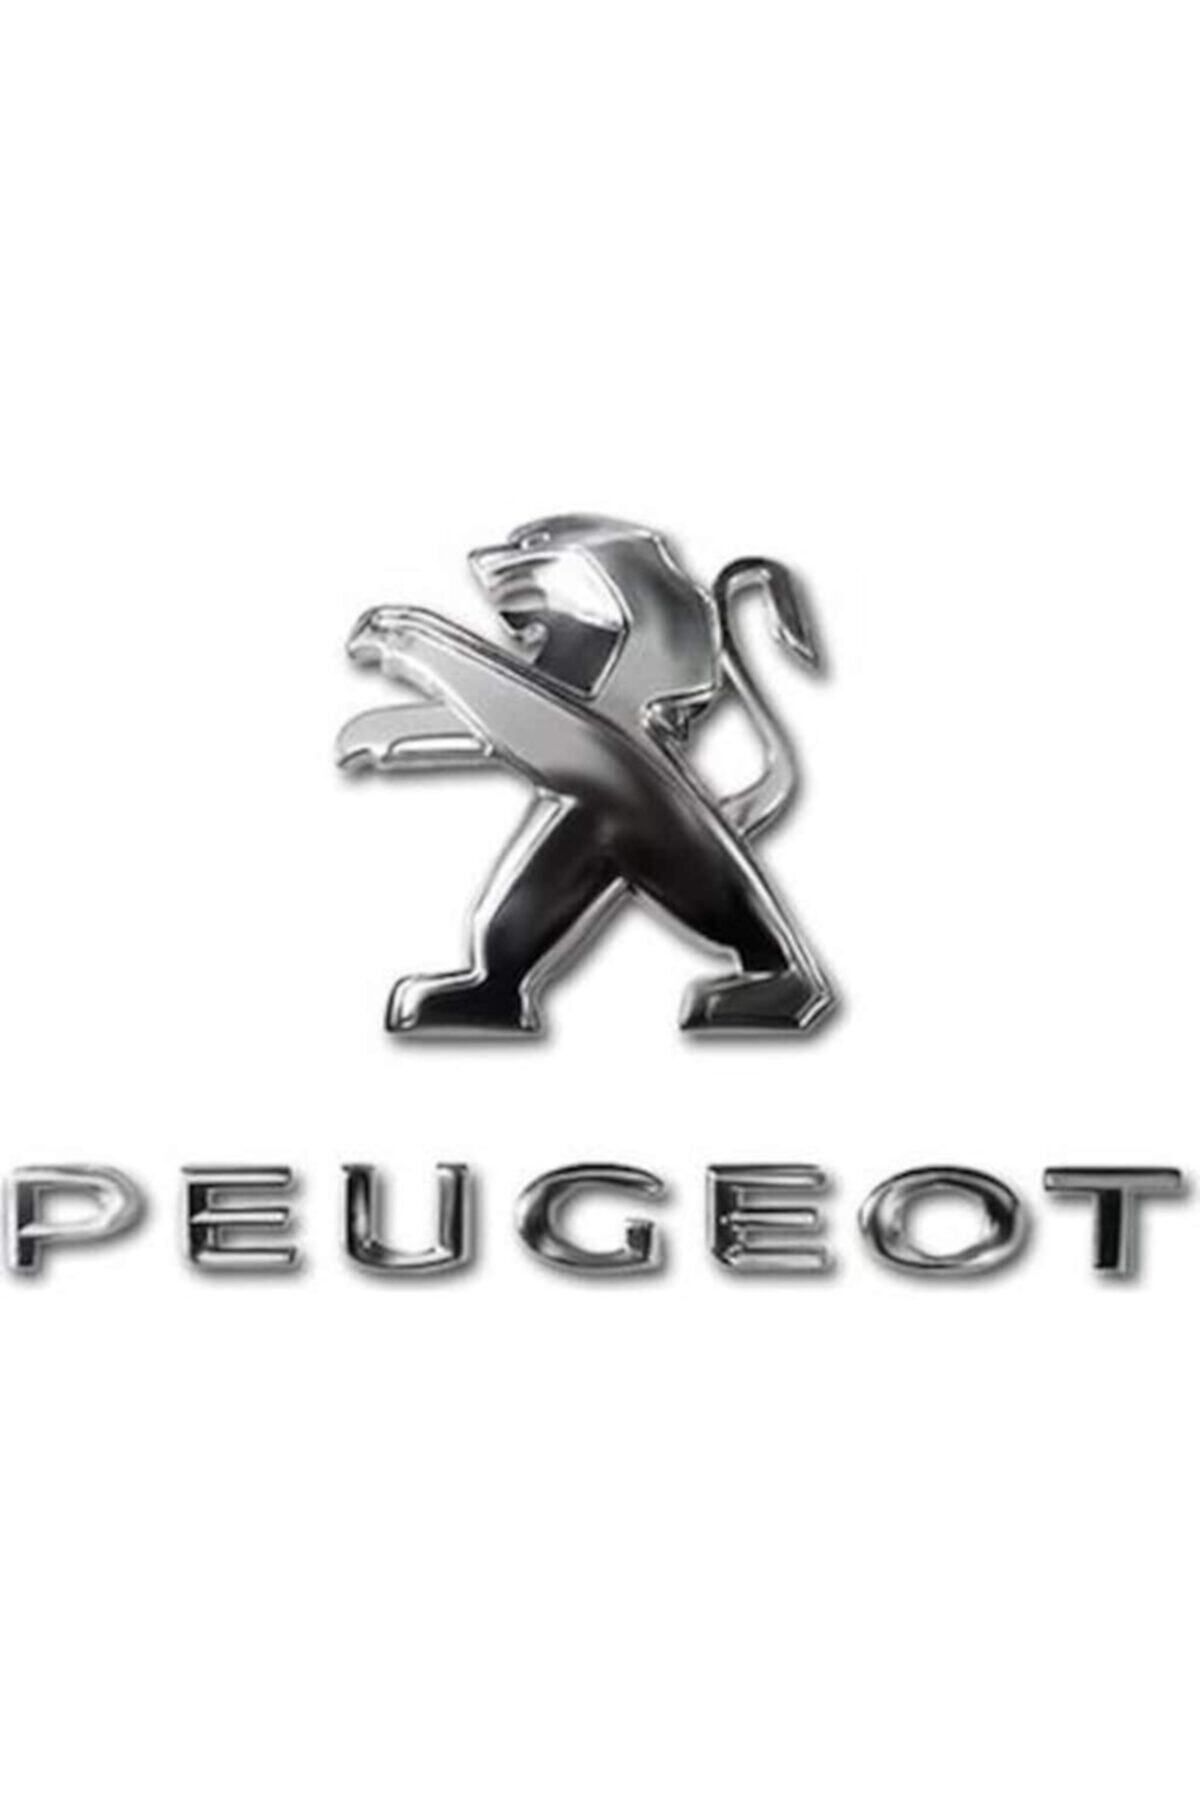 EDEXPORT Peugeot 301 Aslan Arma Ve Peugeot Ve 301 Yazısı Seti -3 Lü